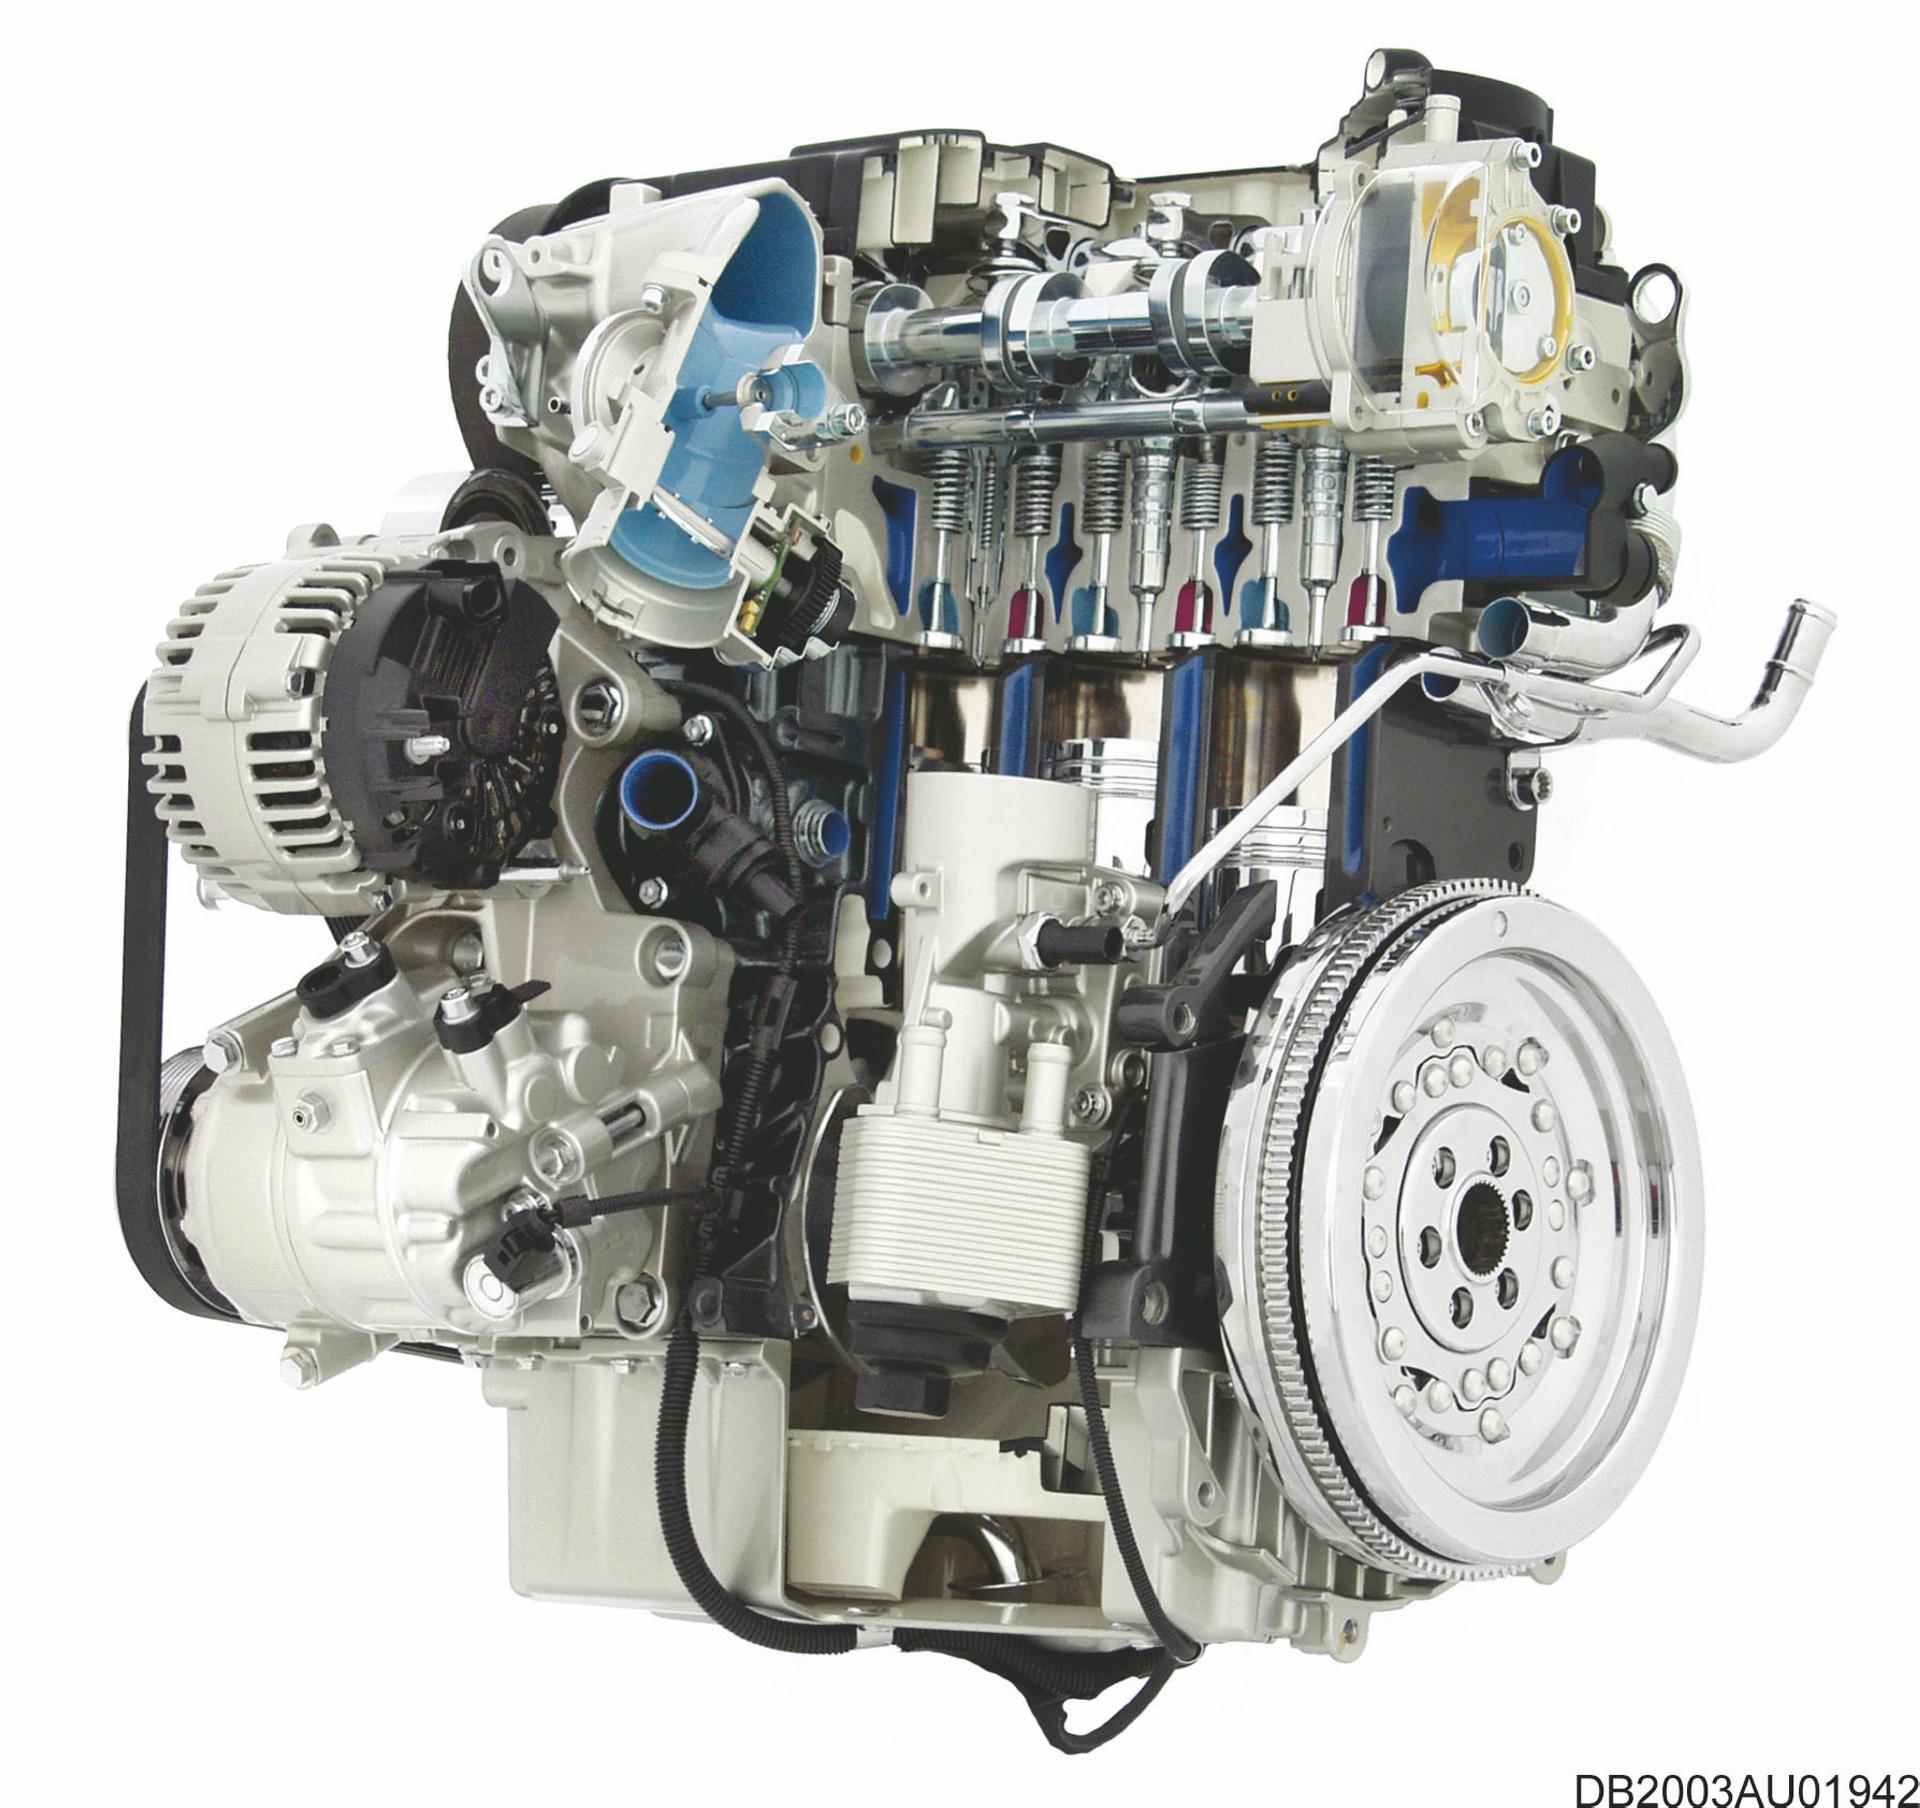 Какой надежный дизельный двигатель. Самый маленький дизельный двигатель. Двигатель VW 1,8 прямой впрыск. Старый дизельный двигатель Фольксваген. Модель двигателя для печати.